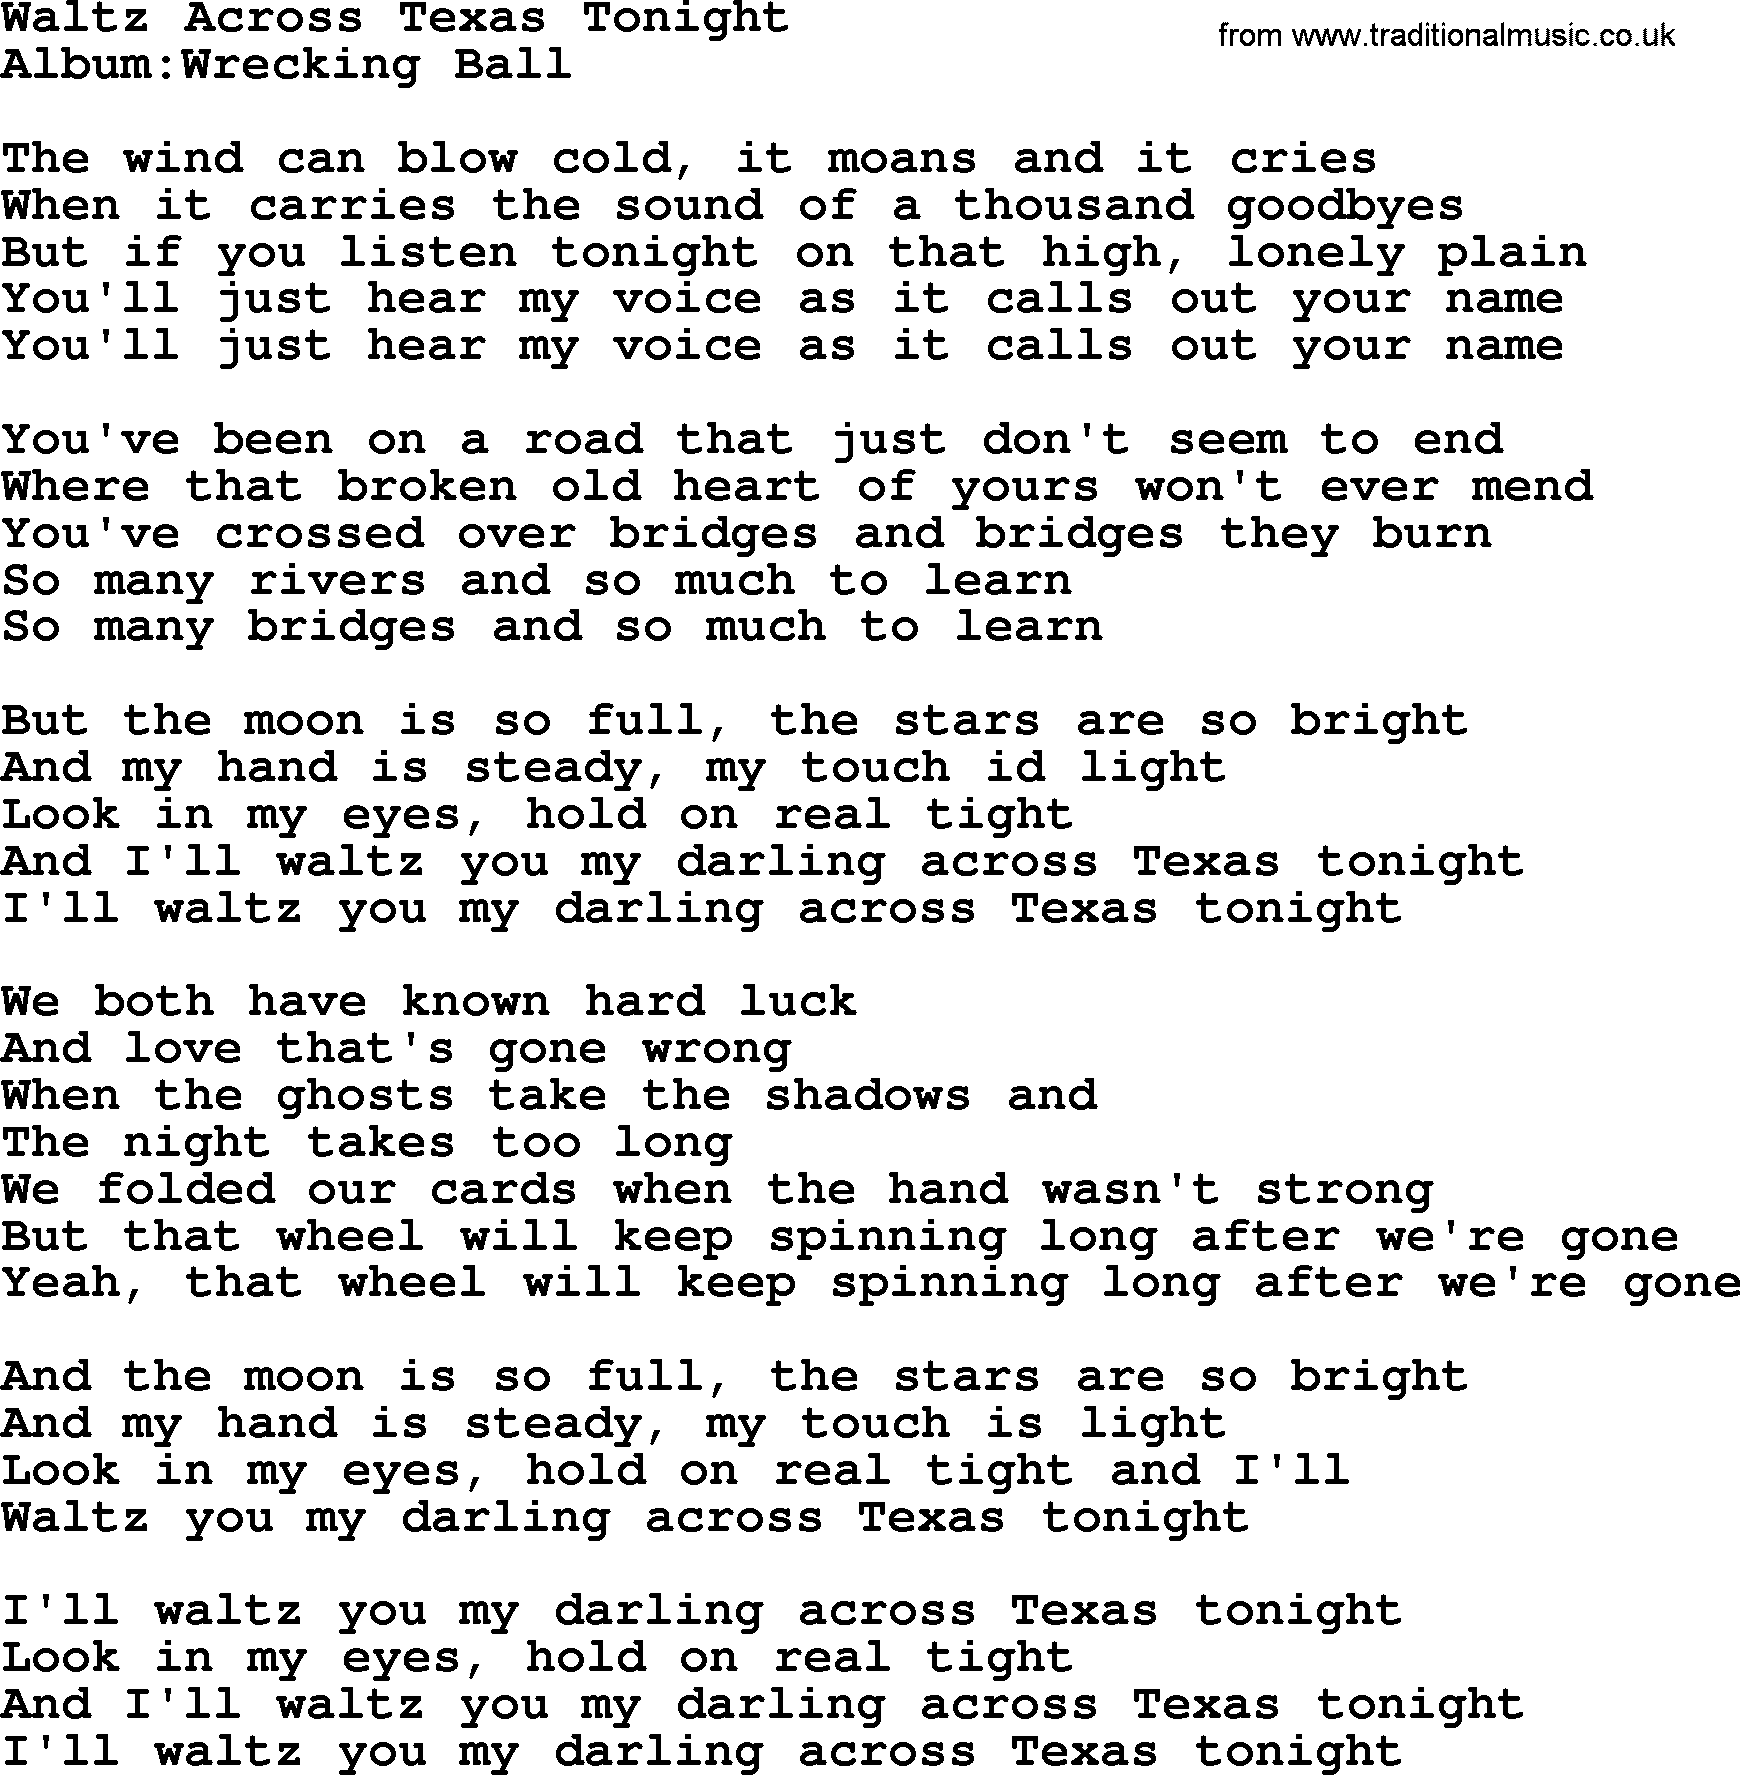 Emmylou Harris song: Waltz Across Texas Tonight lyrics